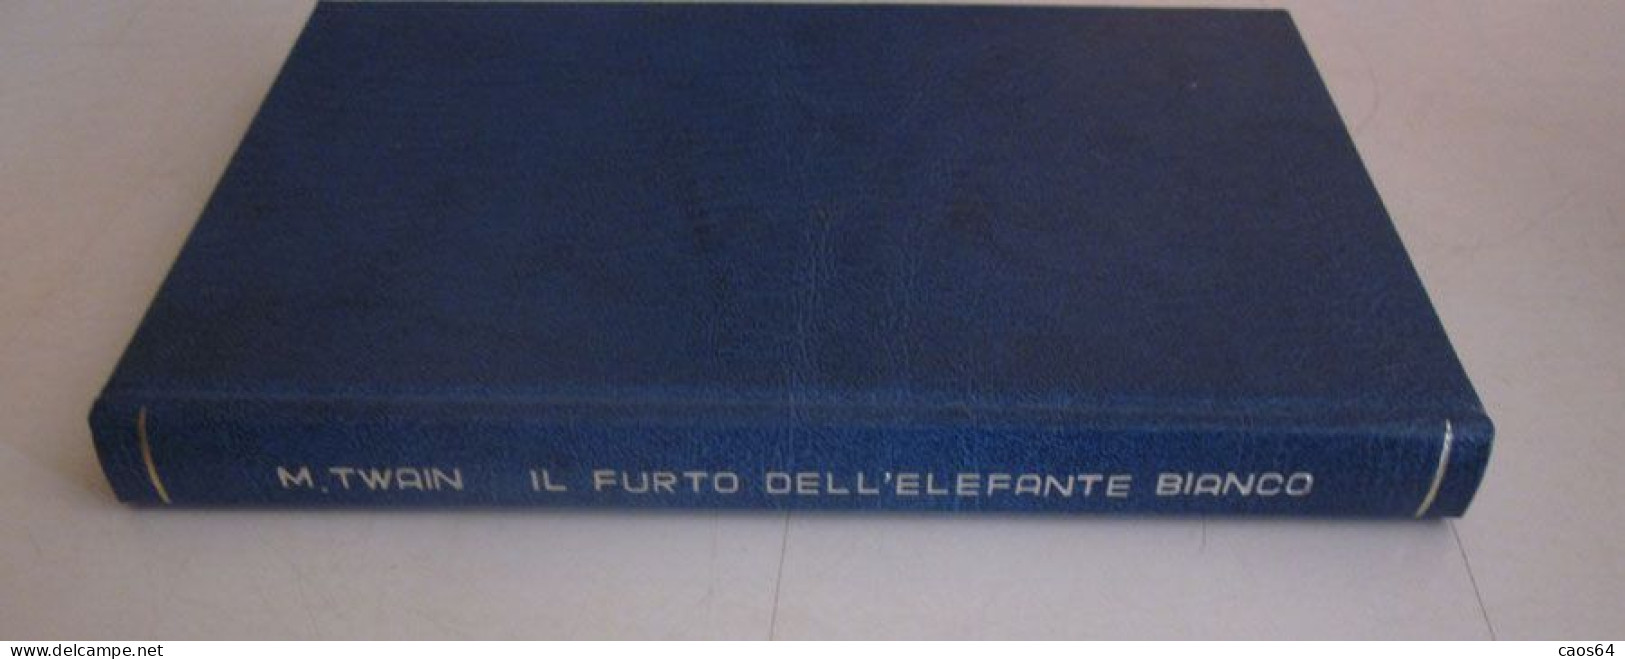 Il Furto Dell'elefante Bianco Mark Twain Rizzoli BUR 1952 - Klassik